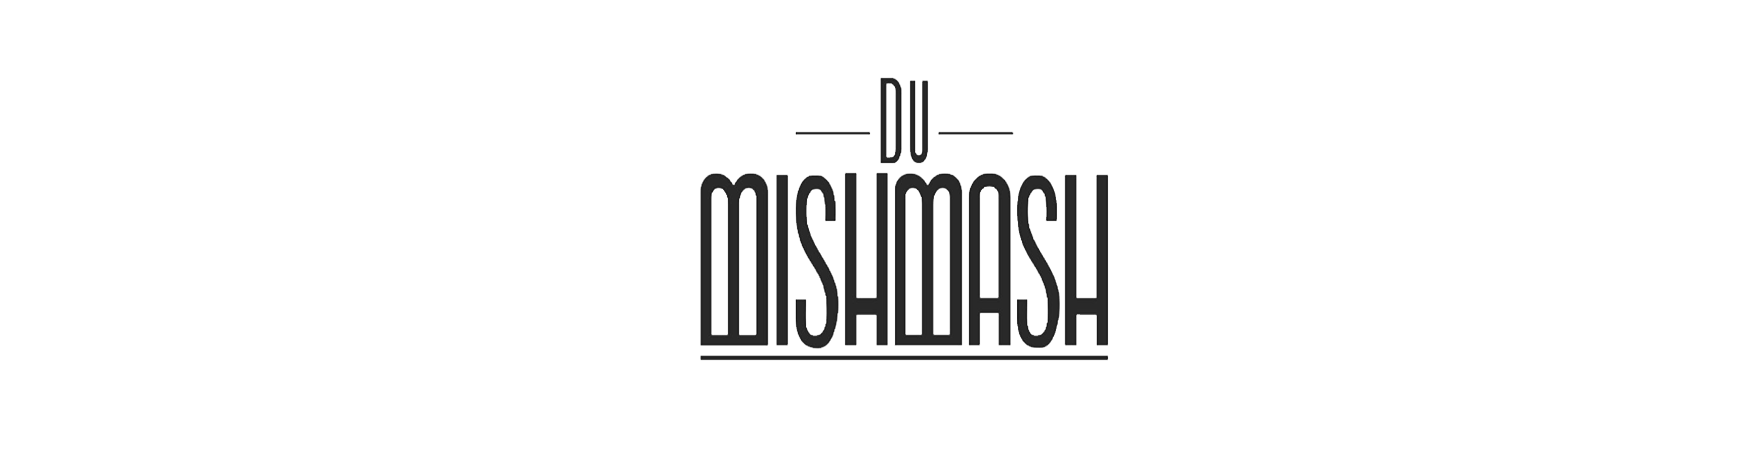 Du-Mishmash